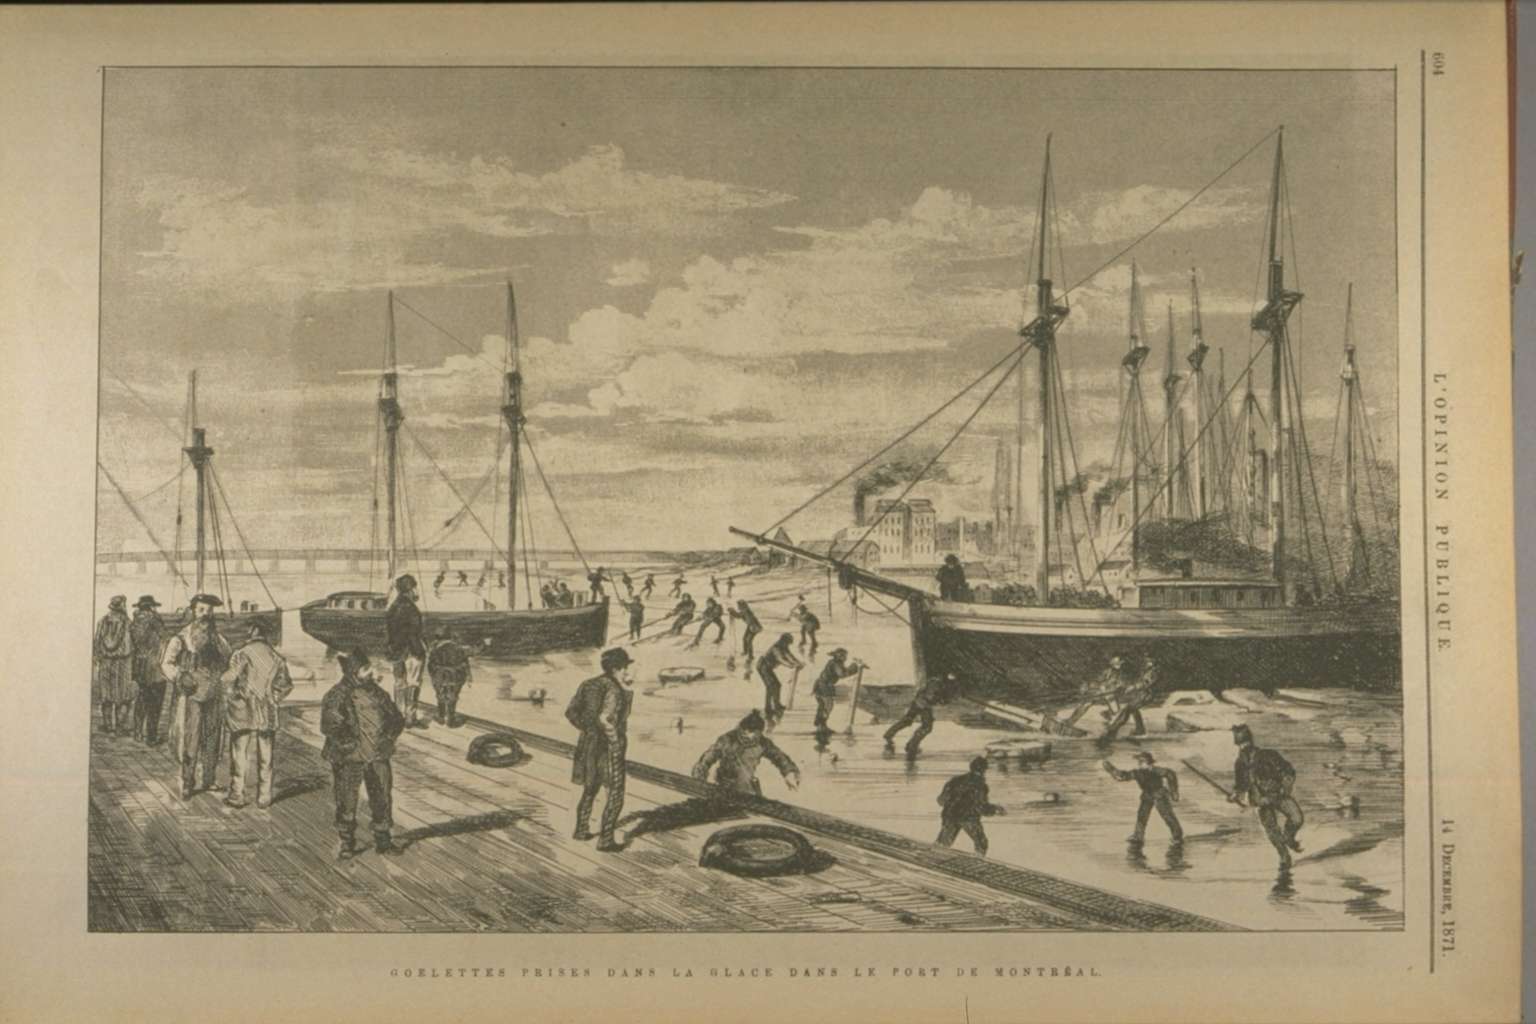 Illustration de goélettes prises dans la glace au port. Plusieurs travailleurs se mettent à l'ouvrage sur la glace autour des goélettes.